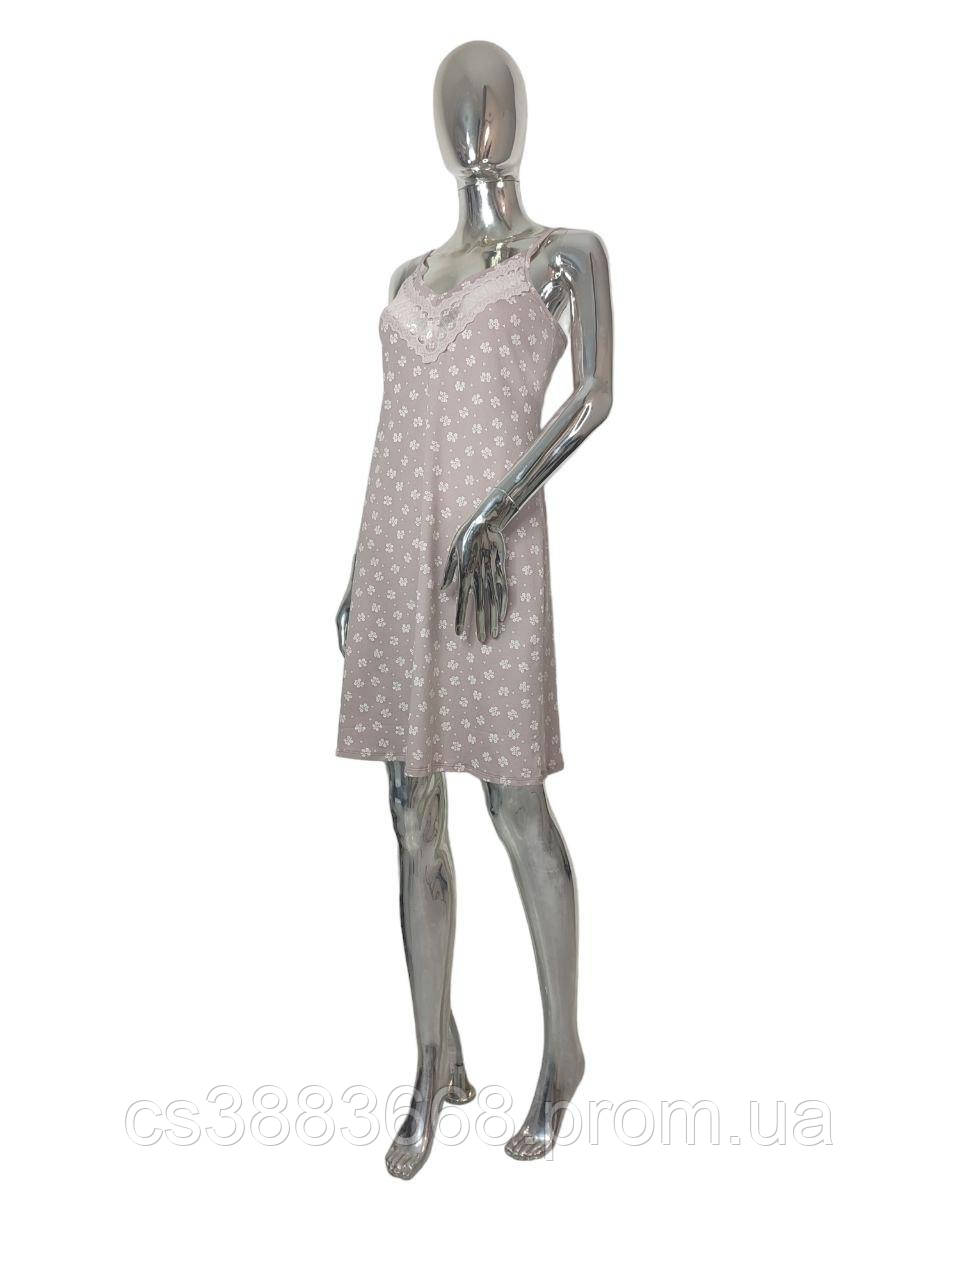 Жіноча нічна сукня сорочка бавовняна з мереживом і квітковим принтом ночнушка Роксана бежева S